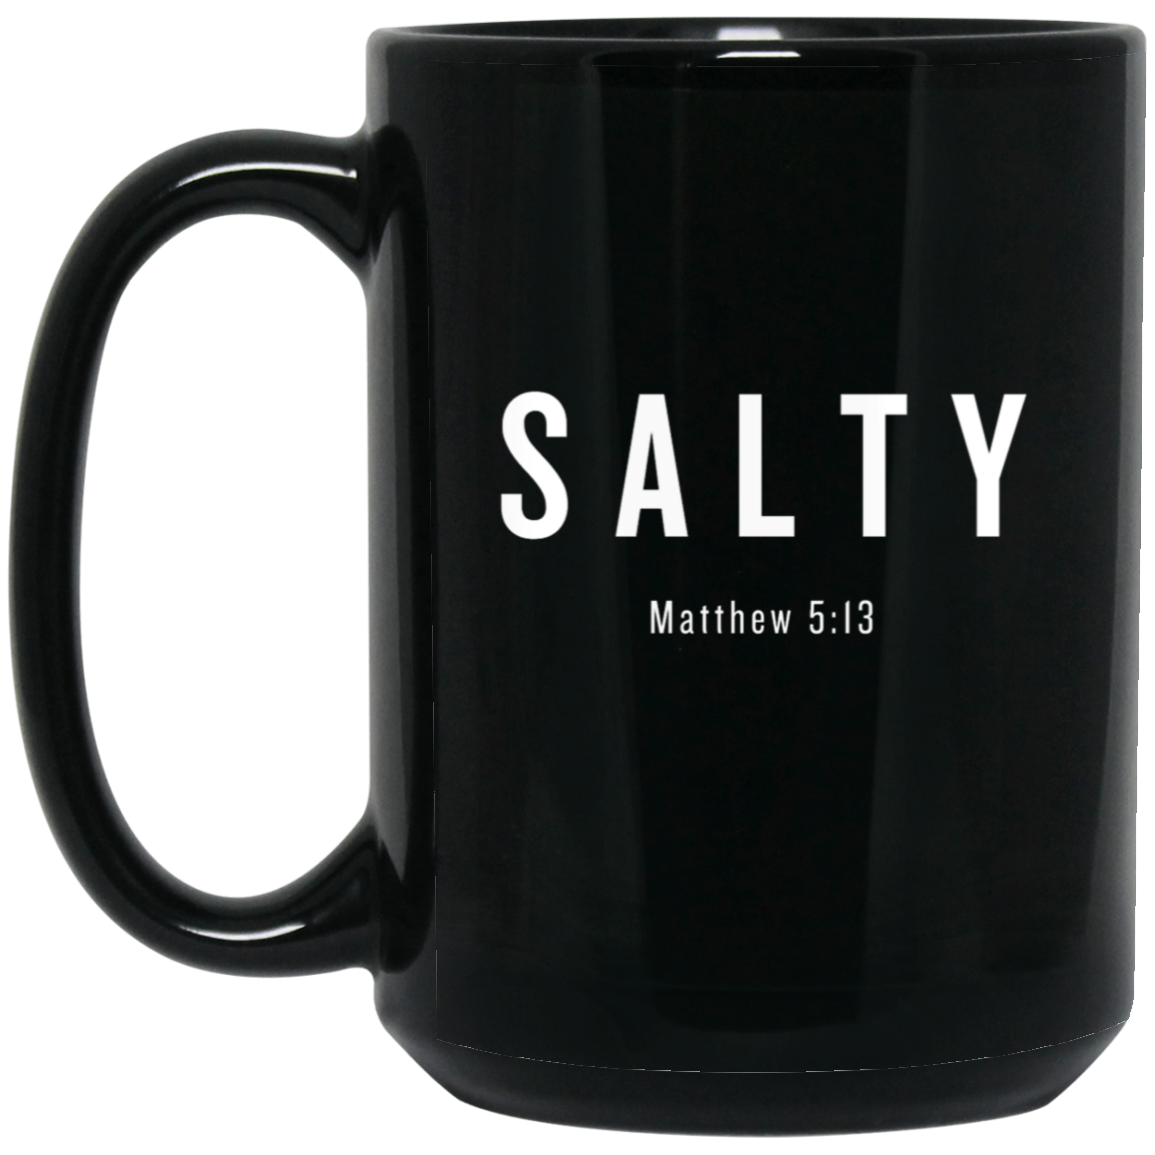 Salty Matt 5:13 15oz Black Mug